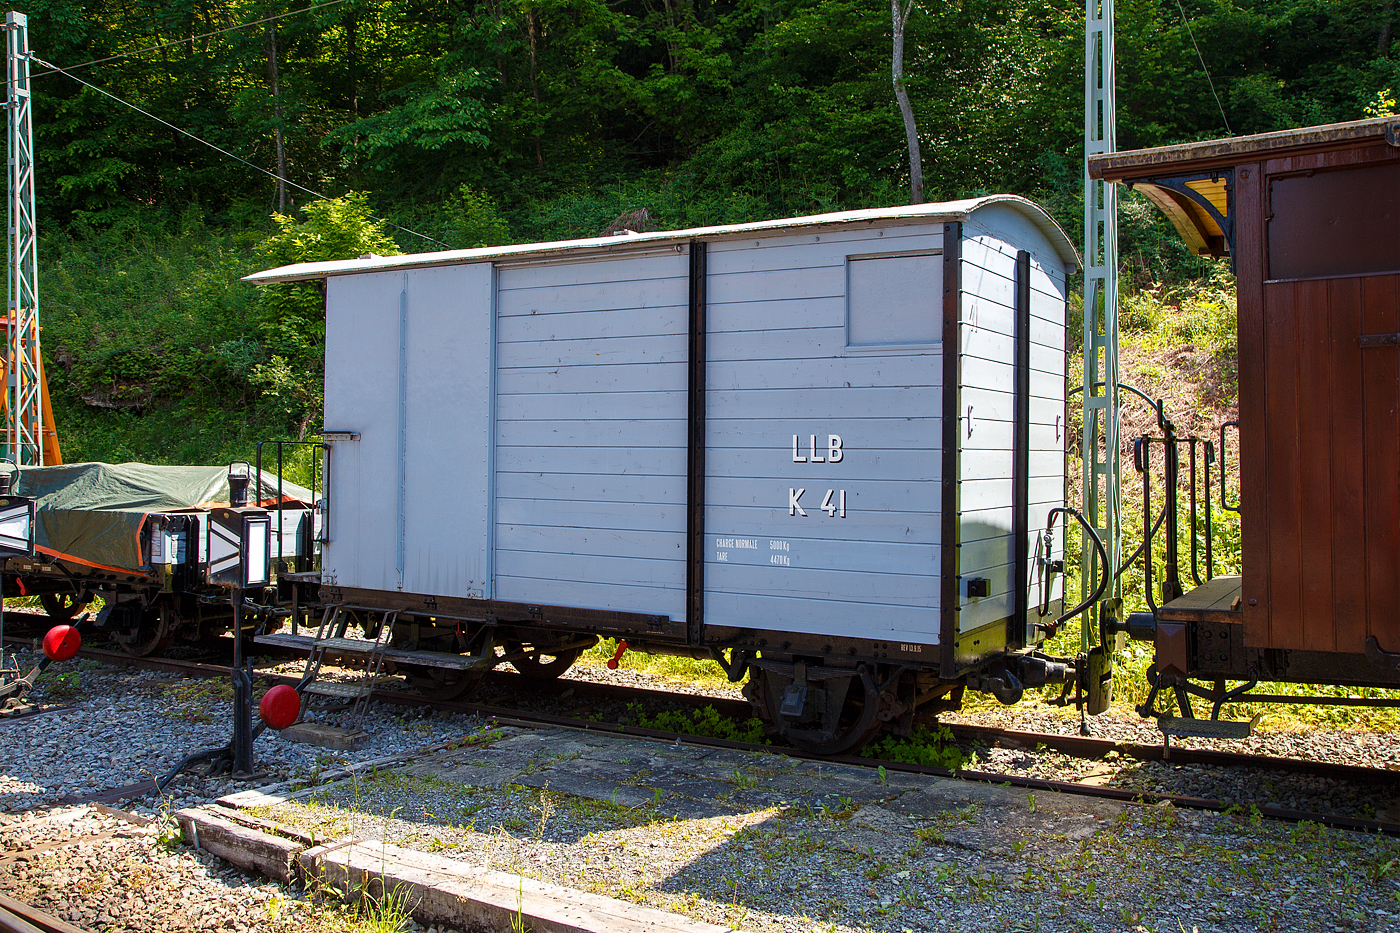 Der zweiachsige gedeckte Güterwagen mit einer Bremserbühne ex LLB K 41 der Museumsbahn Blonay-Chamby steht am 27.05.2023 im Museumsareal Chaulin. 

Der Wagen wurde 1915 von der SWS in Schlieren (Schweizerische Wagons- und Aufzügefabrik AG) gebaut und an die 1915 eröffnete LLB geliefert. Die Leuk-Leukerbad-Bahn, abgekürzt LLB, französisch Chemin de fer Loèche-Loèche-les-Bains, betrieb zwischen 1915 und 1967 eine 10,4 Kilometer lange, elektrifizierte und schmalspurige Zahnradbahnstrecke im schweizerischen Kanton Wallis. Nach der Stilllegung der Strecke 1967 wurde der Wagen von der gerade gegründeten Museumsbahn Blonay–Chamby (ursprünglich Société pour la création du chemin de fer touristique Blonay–Chamby) übernommen.

TECHNISCHE DATEN:
Spurweite: 1.000 mm (Meterspur)
Achsanzahl: 2
Länge über Puffer: 5.800 mm
Breite: 2.100 mm
Achsabstand: 2.700 mm
Laufraddurchmesser: 660 mm (neu)
Bremszahnrad-Teilkreis: Ø 496,8 mm (ursprünglich)
Eigengewicht: 4.470 kg
Nutzlast: 5.000 kg